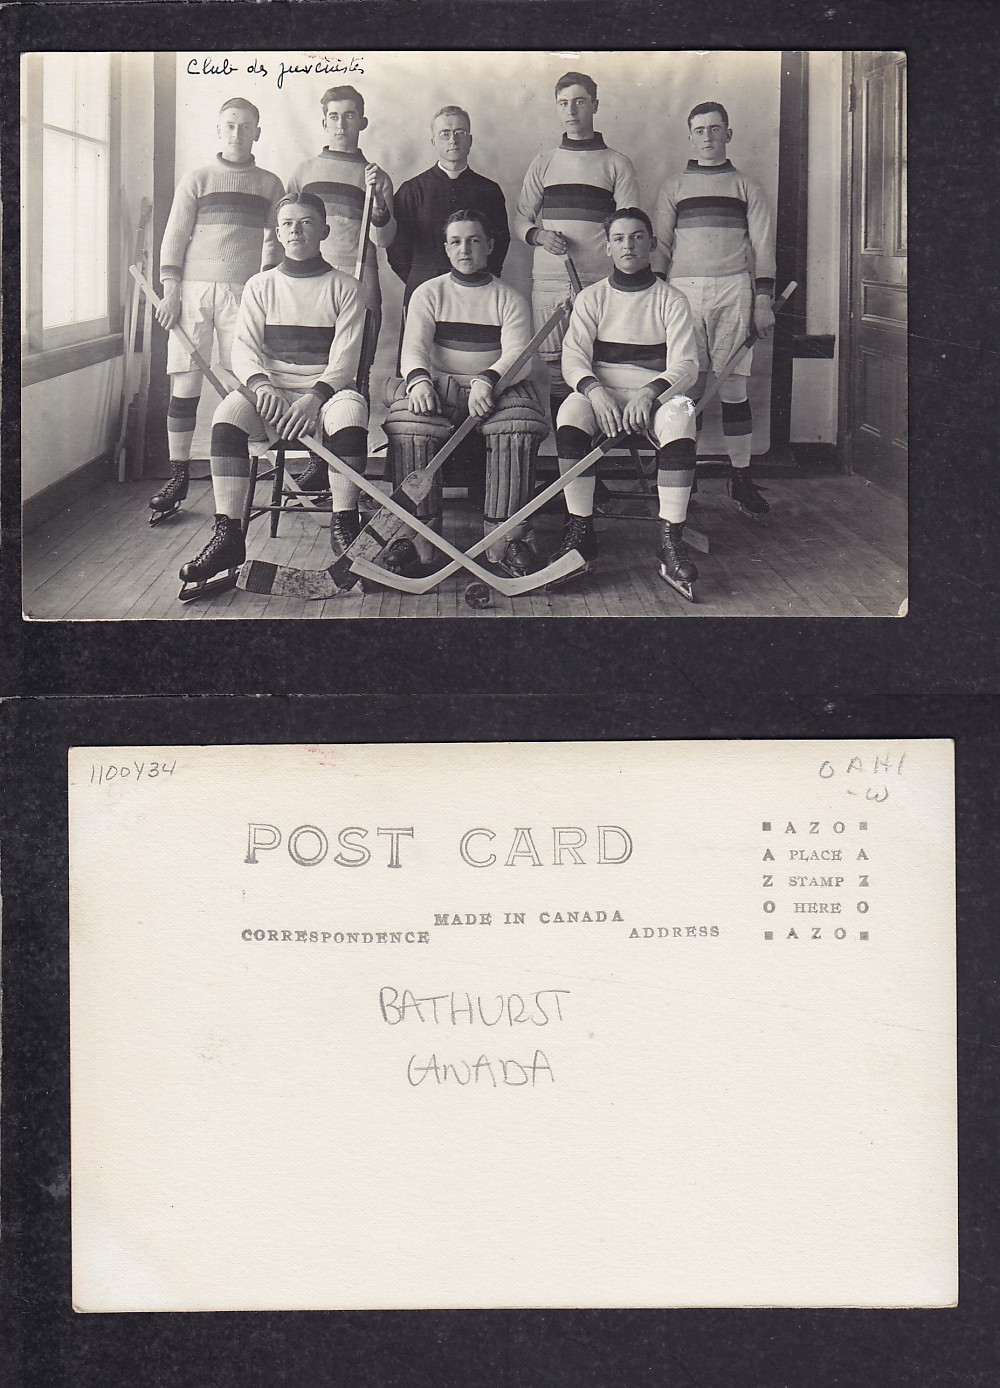 1910'S BATHURST HOCKEY TEAM POST CARD photo